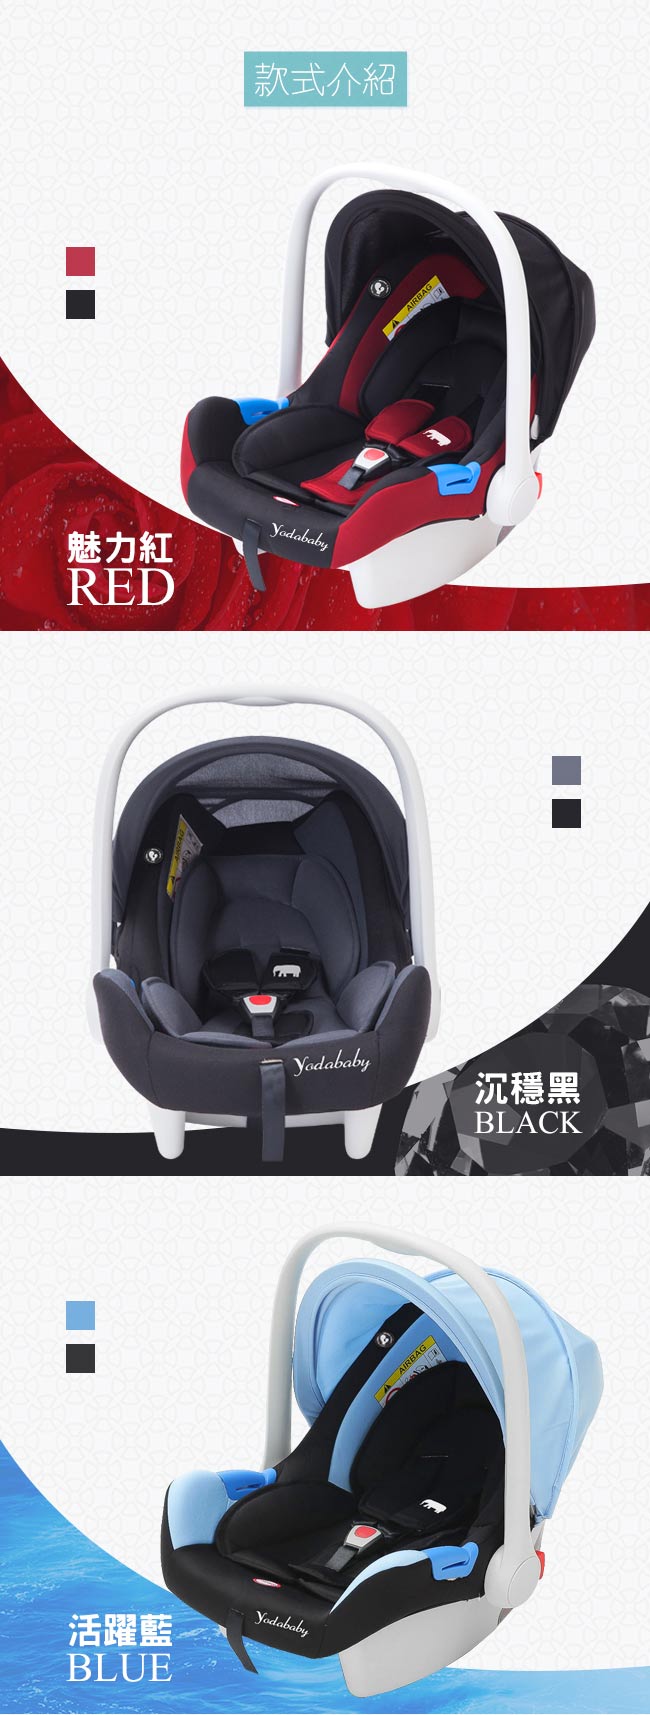 YoDa 嬰兒提籃式安全座椅-沉穩黑